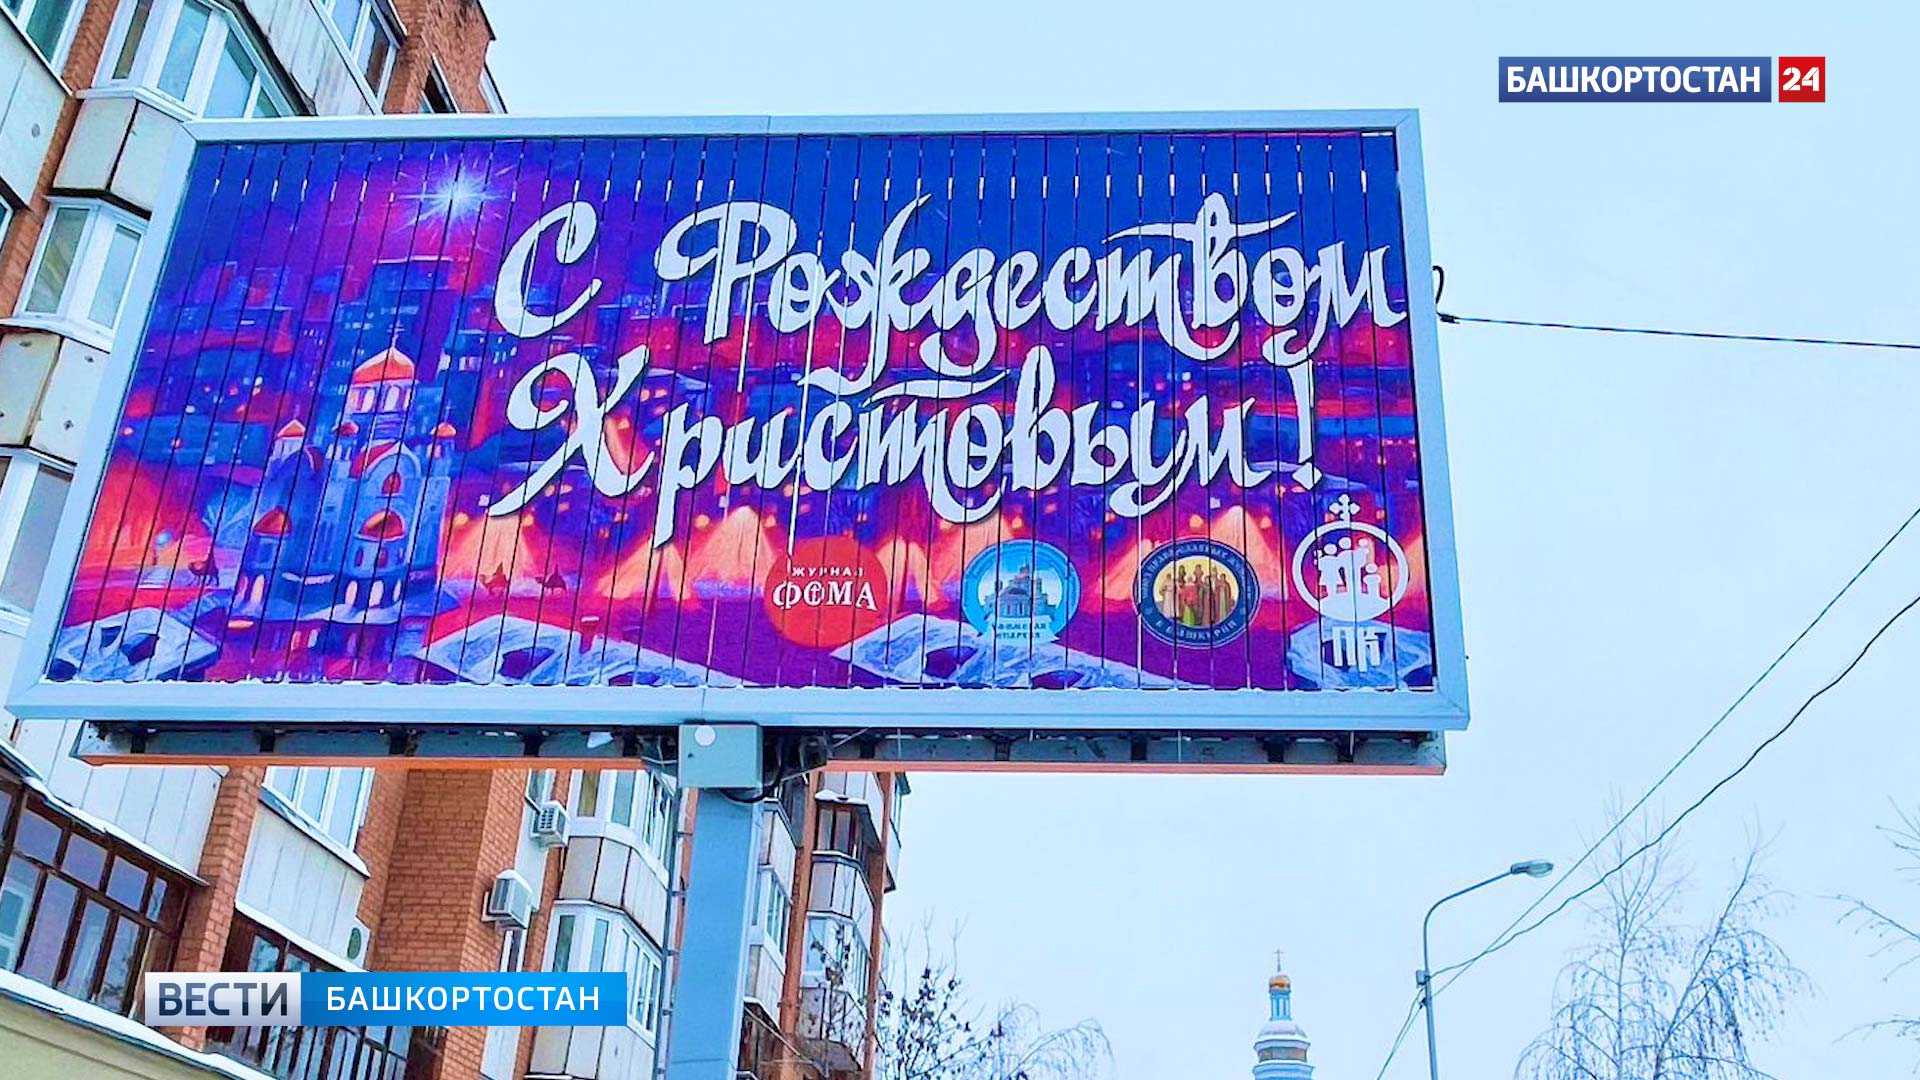 Жителей Башкирии поздравили с Рождеством Христовым и в нескольких городах установили поздравительные билборды